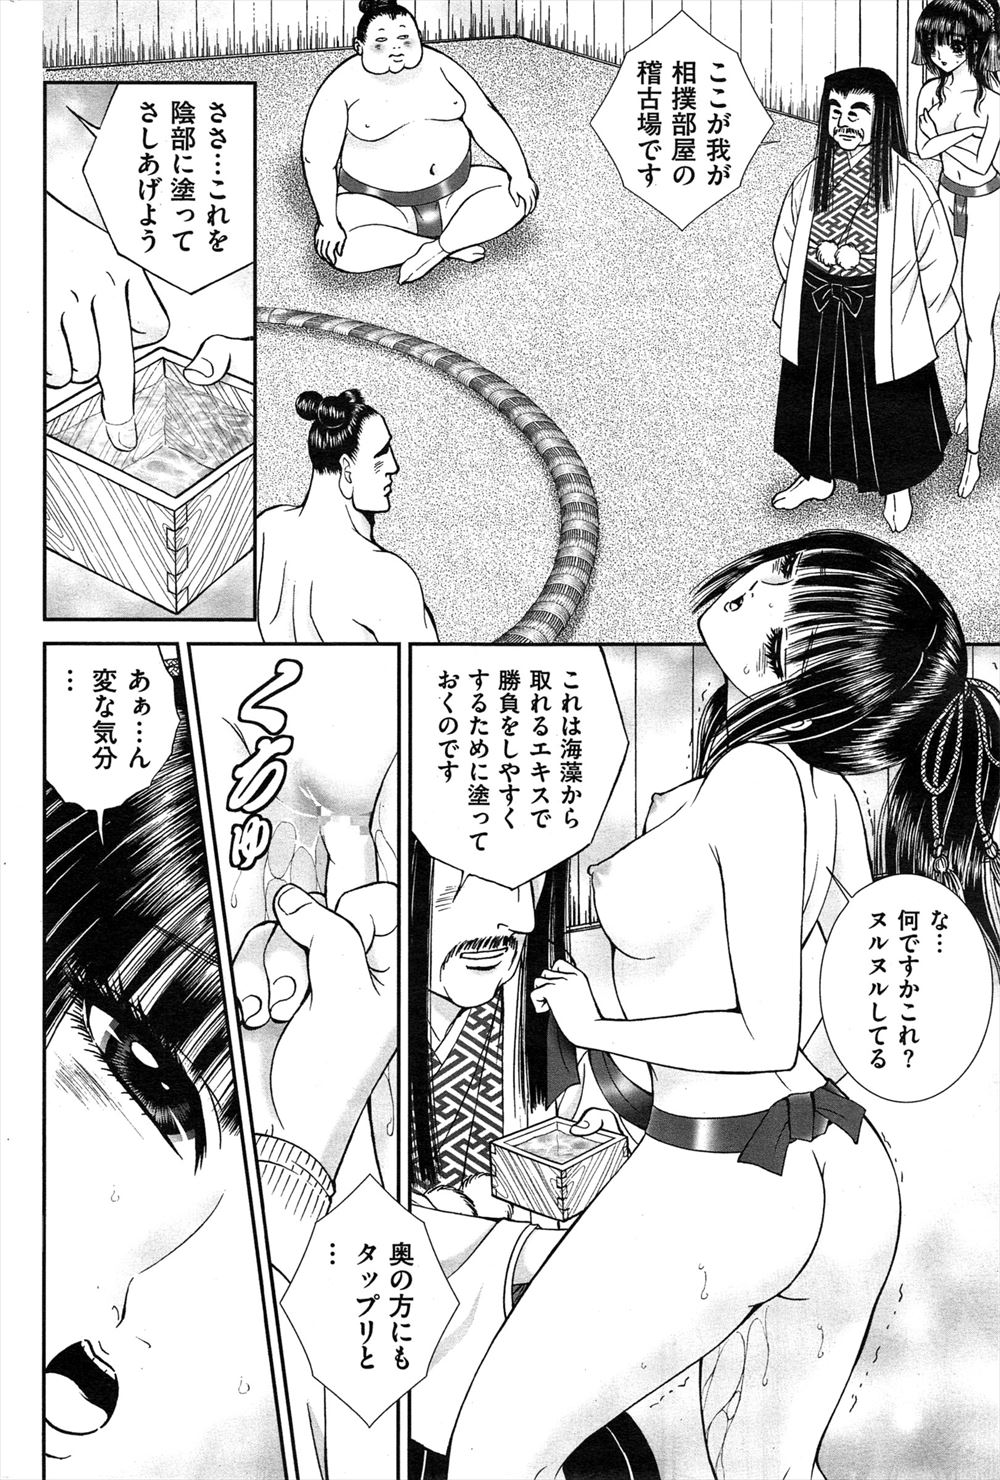 【エロ漫画】お相撲さん大好きな相撲女子が相撲部屋のマネージャーに応募するがなぜかまわしをしめられ土俵に立たされ、お相撲さんたちとセックス相撲させられ中出しされまくるｗ